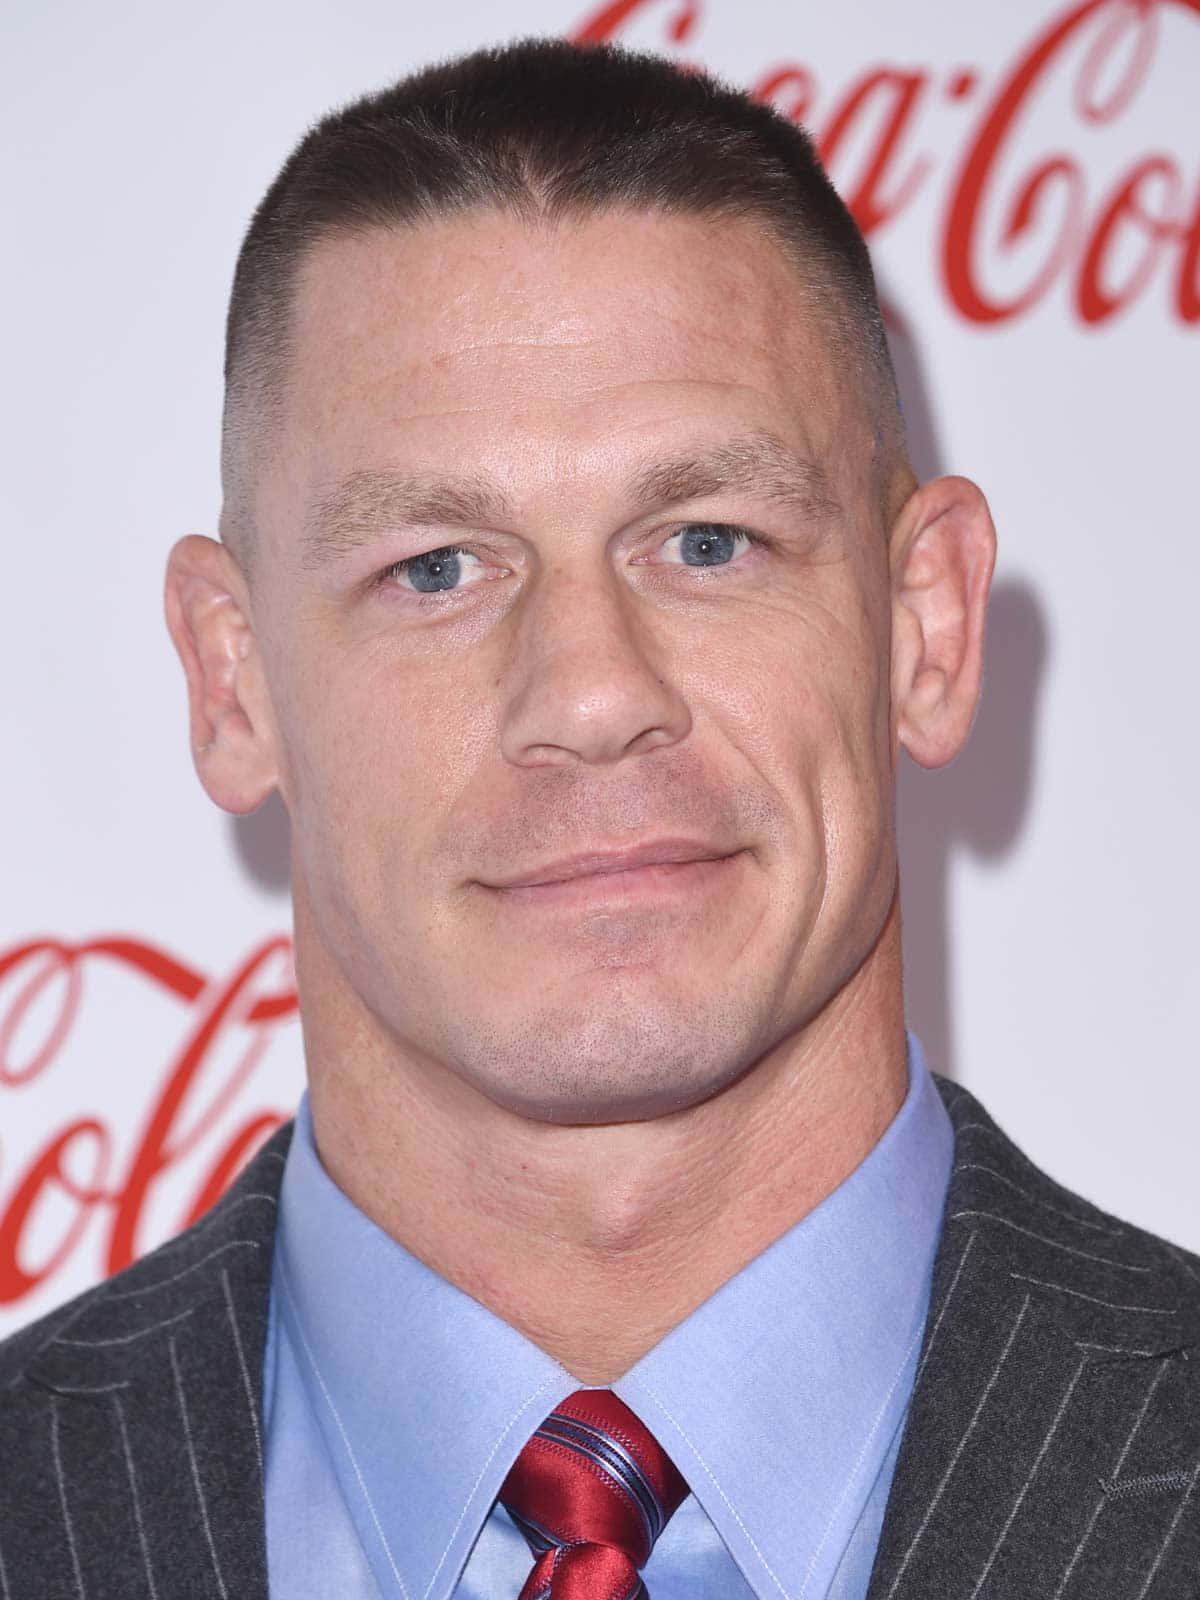 The Legendary Wrestler, John Cena